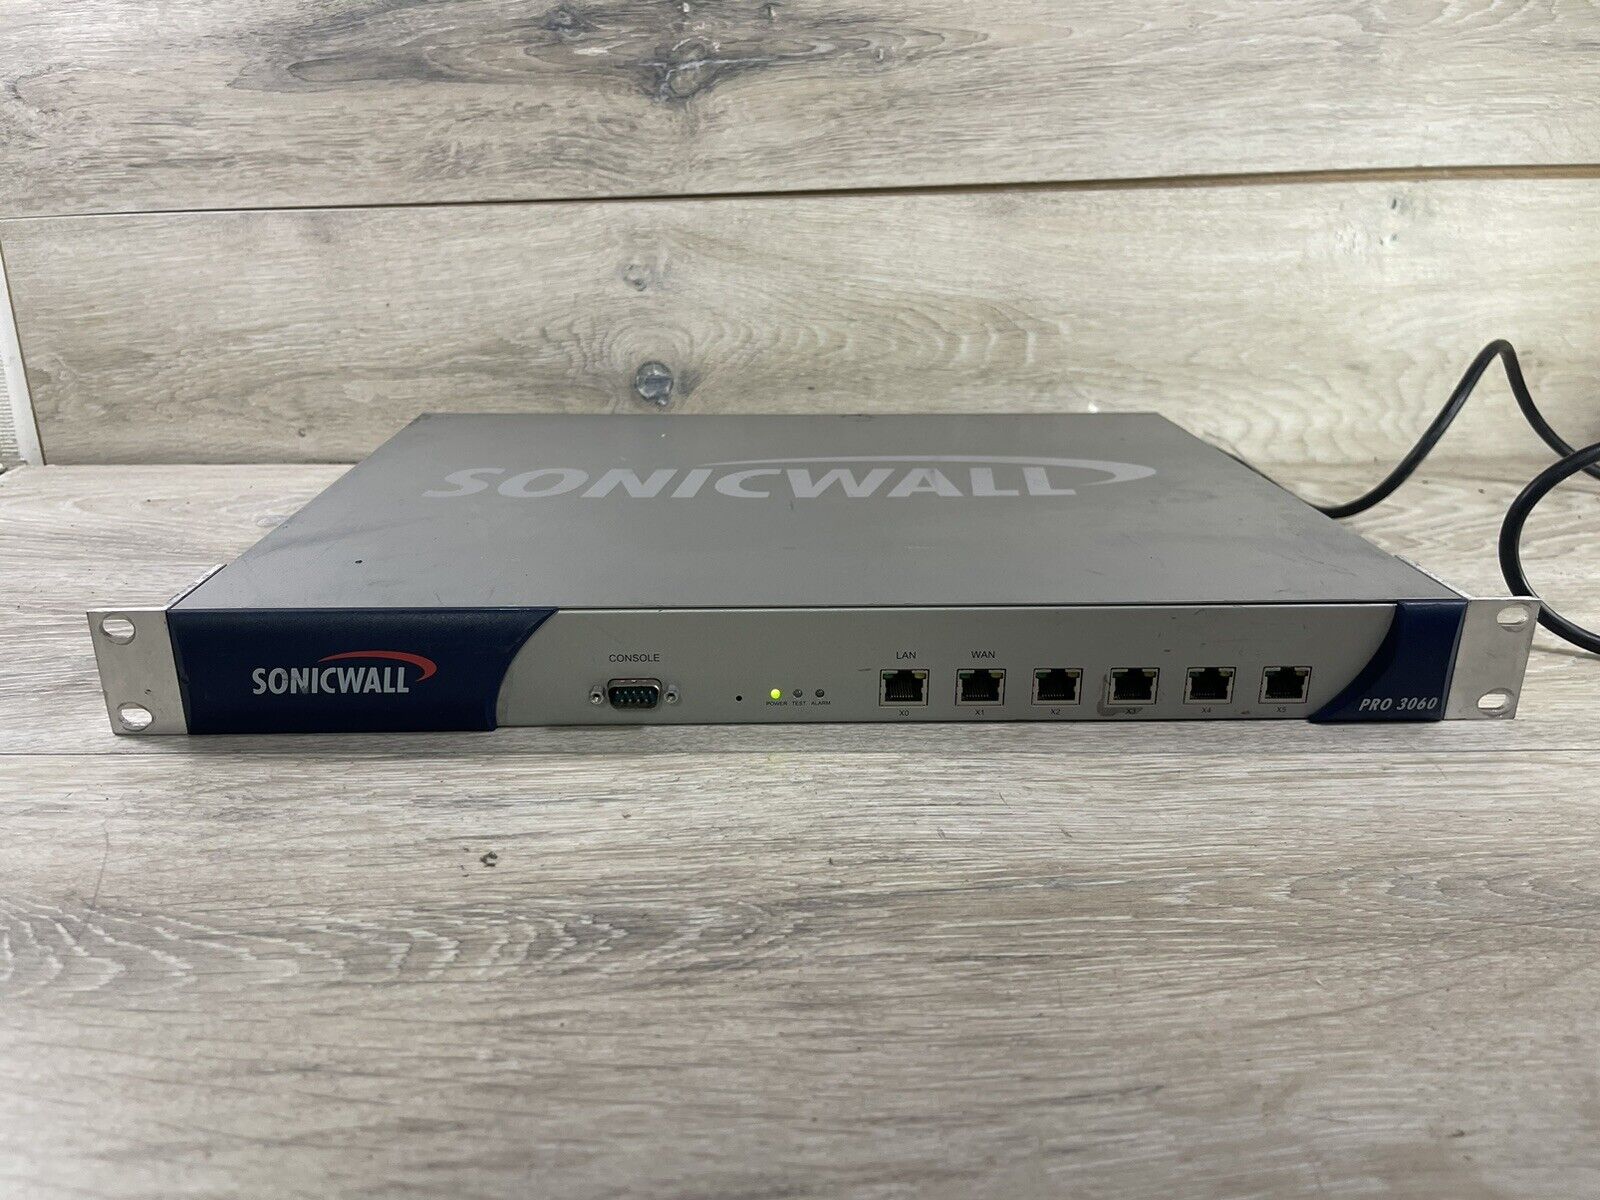 SonicWall PRO 3060 VPN Firewall Network Security Appliance 1RK09-032